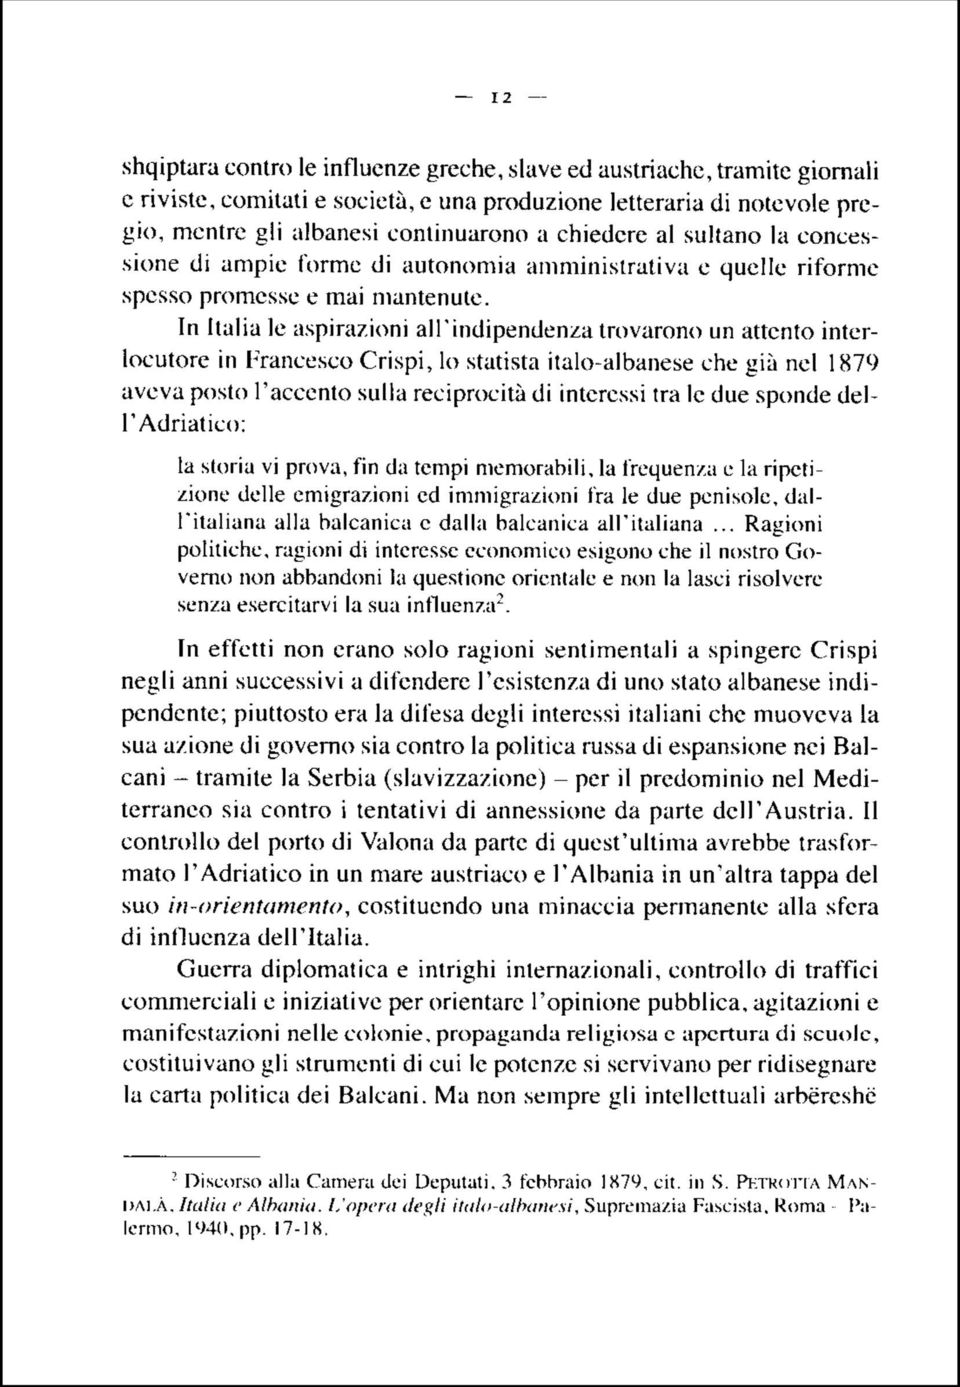 In Italia le aspirazioni all'indipendenza trovarono un attento interlocutore in Francesco Crispi, lo statista italo-albanese che già nel 1879 aveva posto l'accento sulla reciprocità di interessi ira